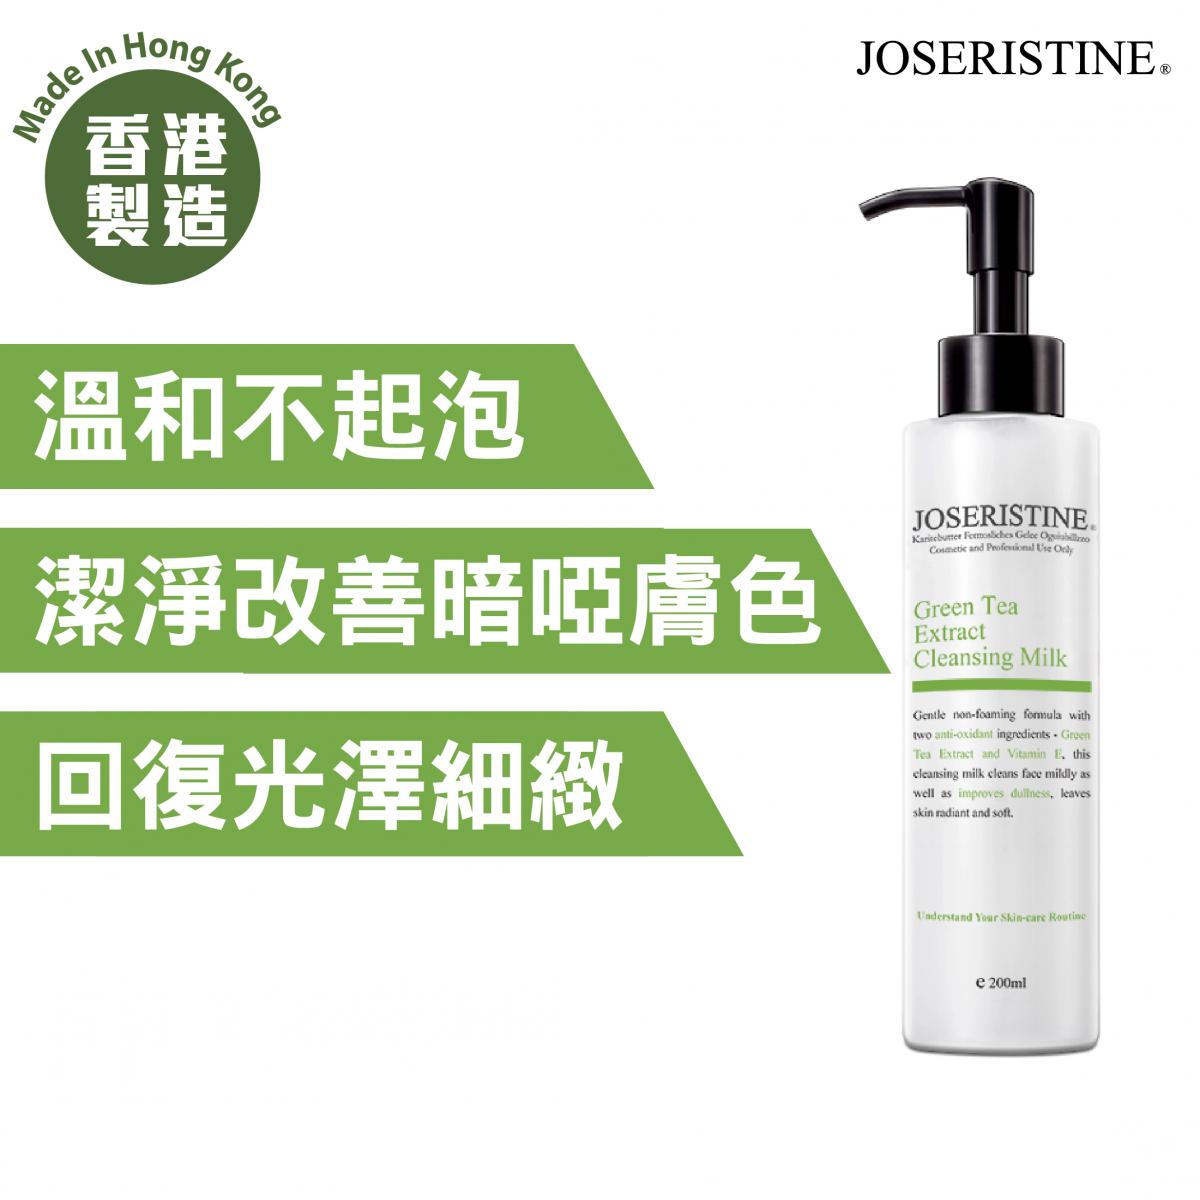 香港 JOSERISTINE - 绿茶抗氧化洗面奶 (200ml) - 